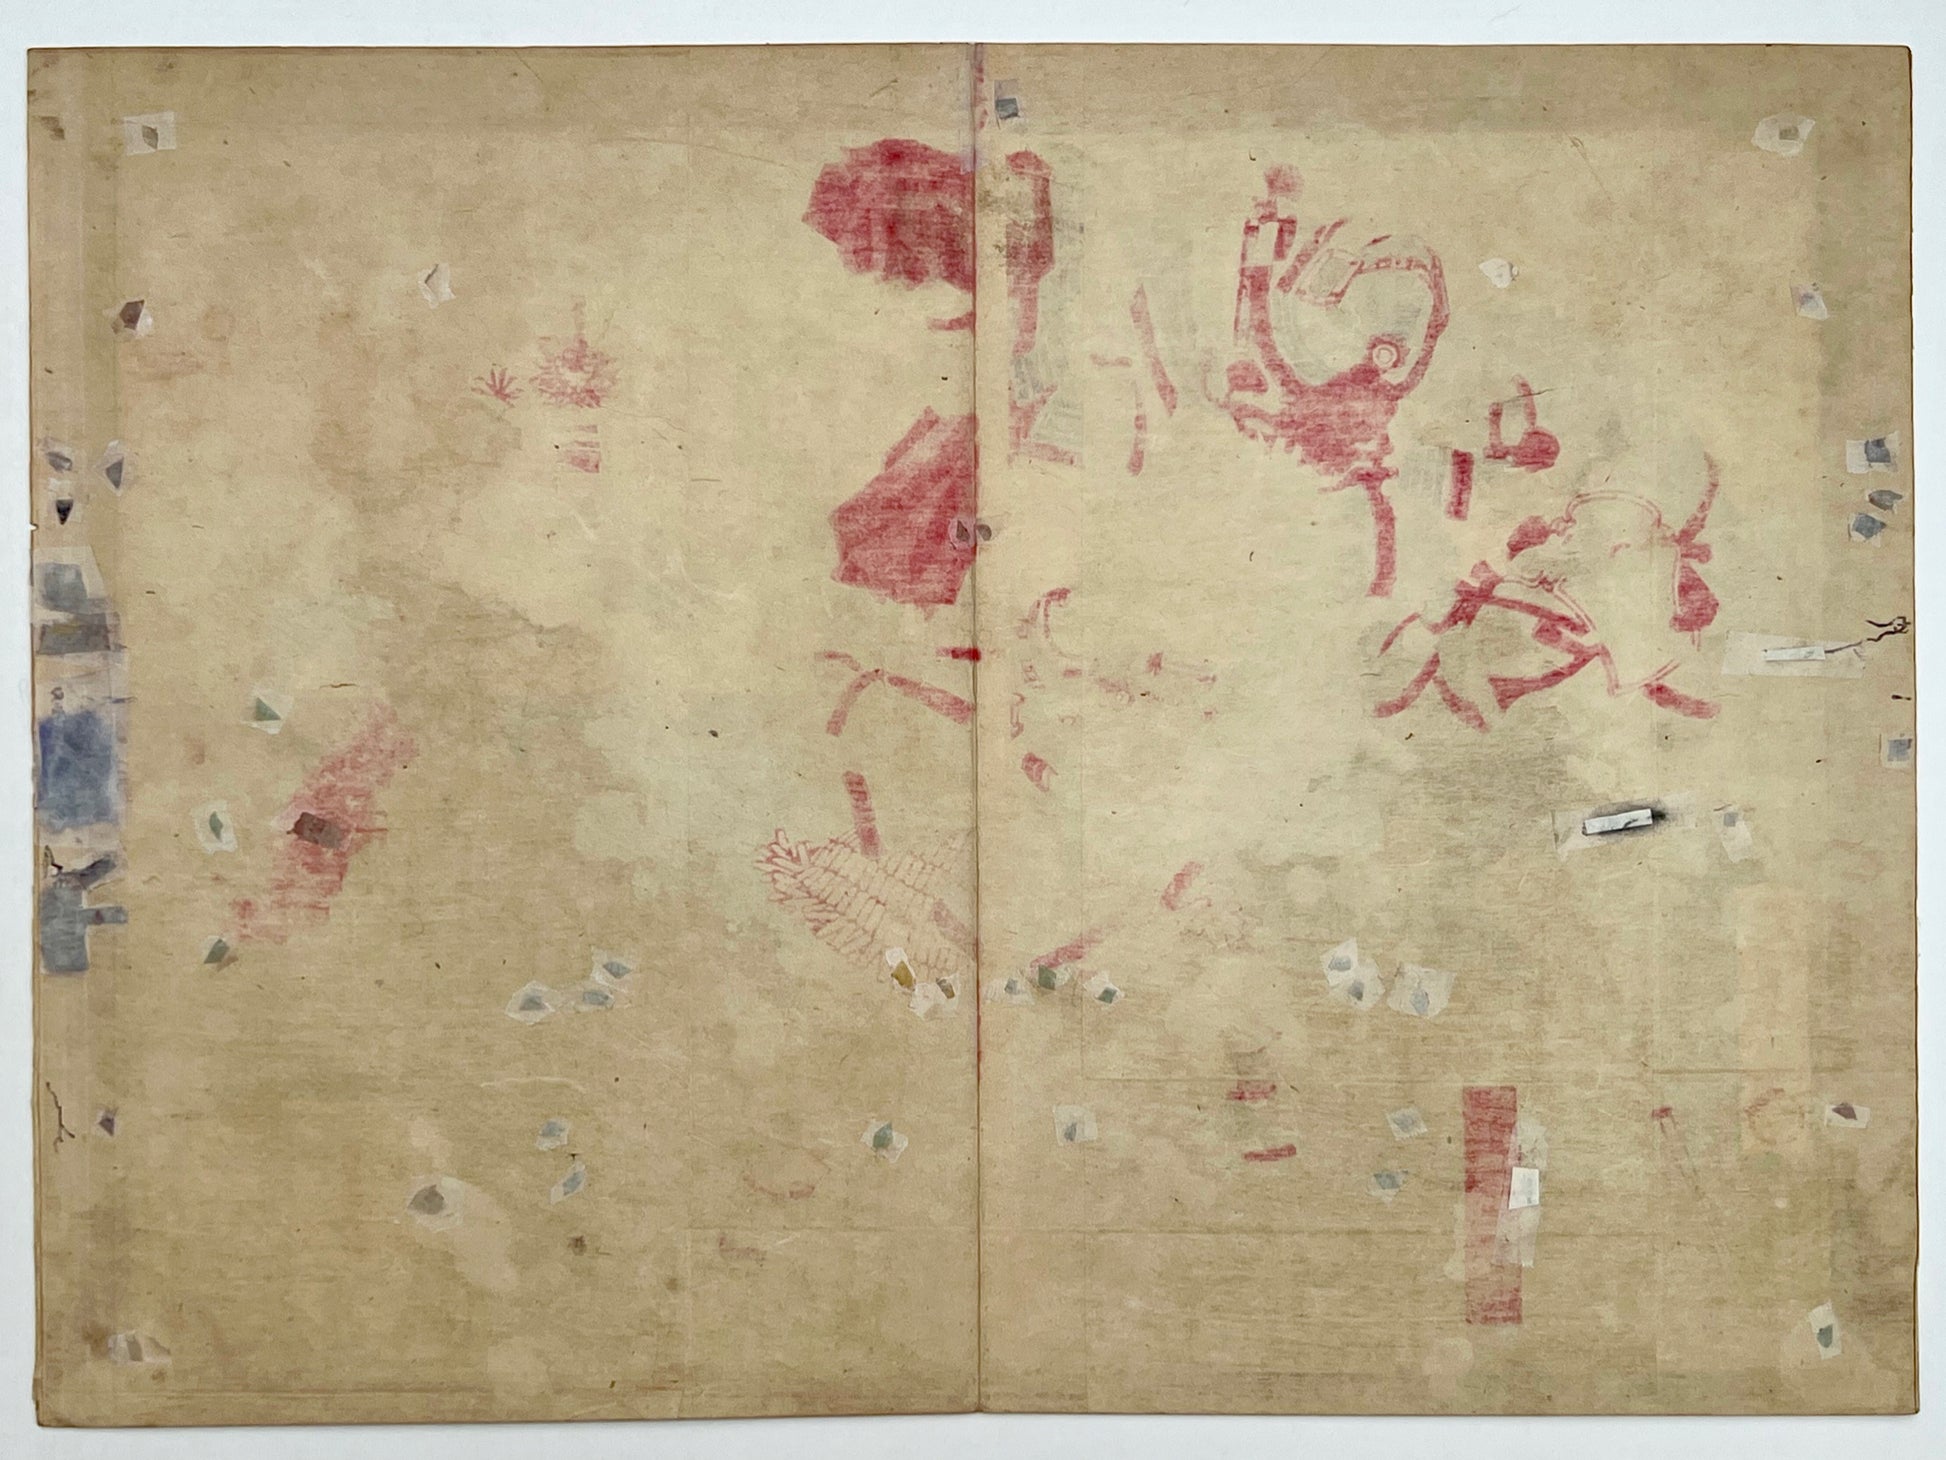 estampe japonaise combat samouraï à cheval, dos de l'estampe